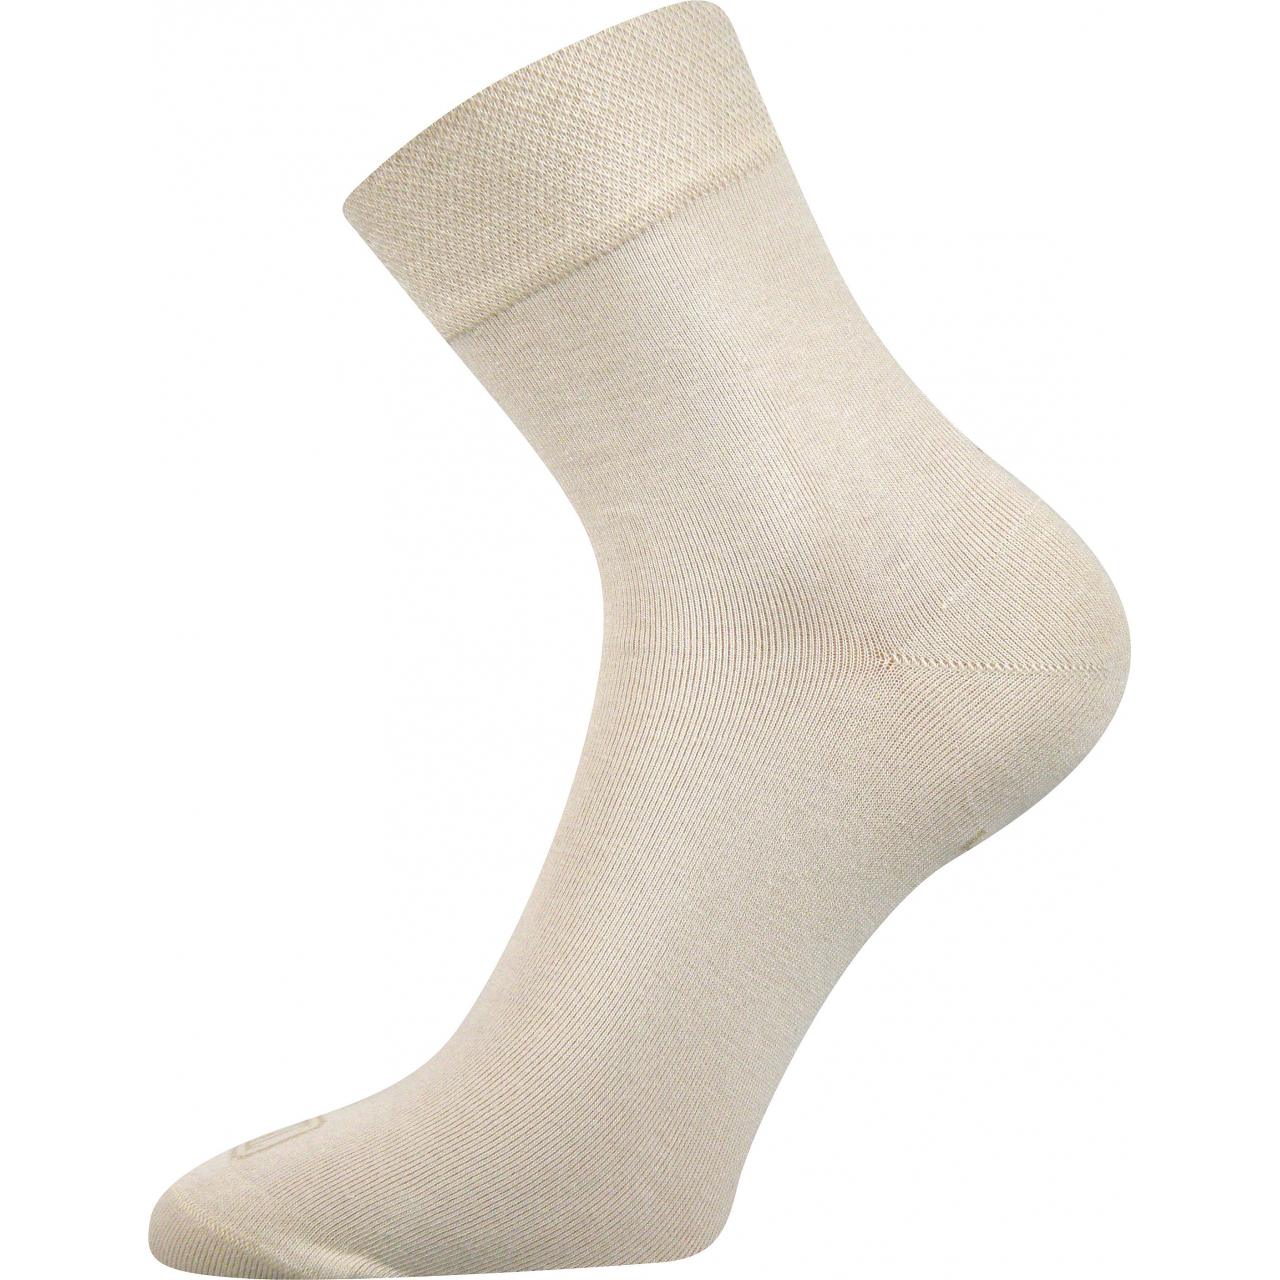 Ponožky dámské Lonka Fanera - béžové, 35-38